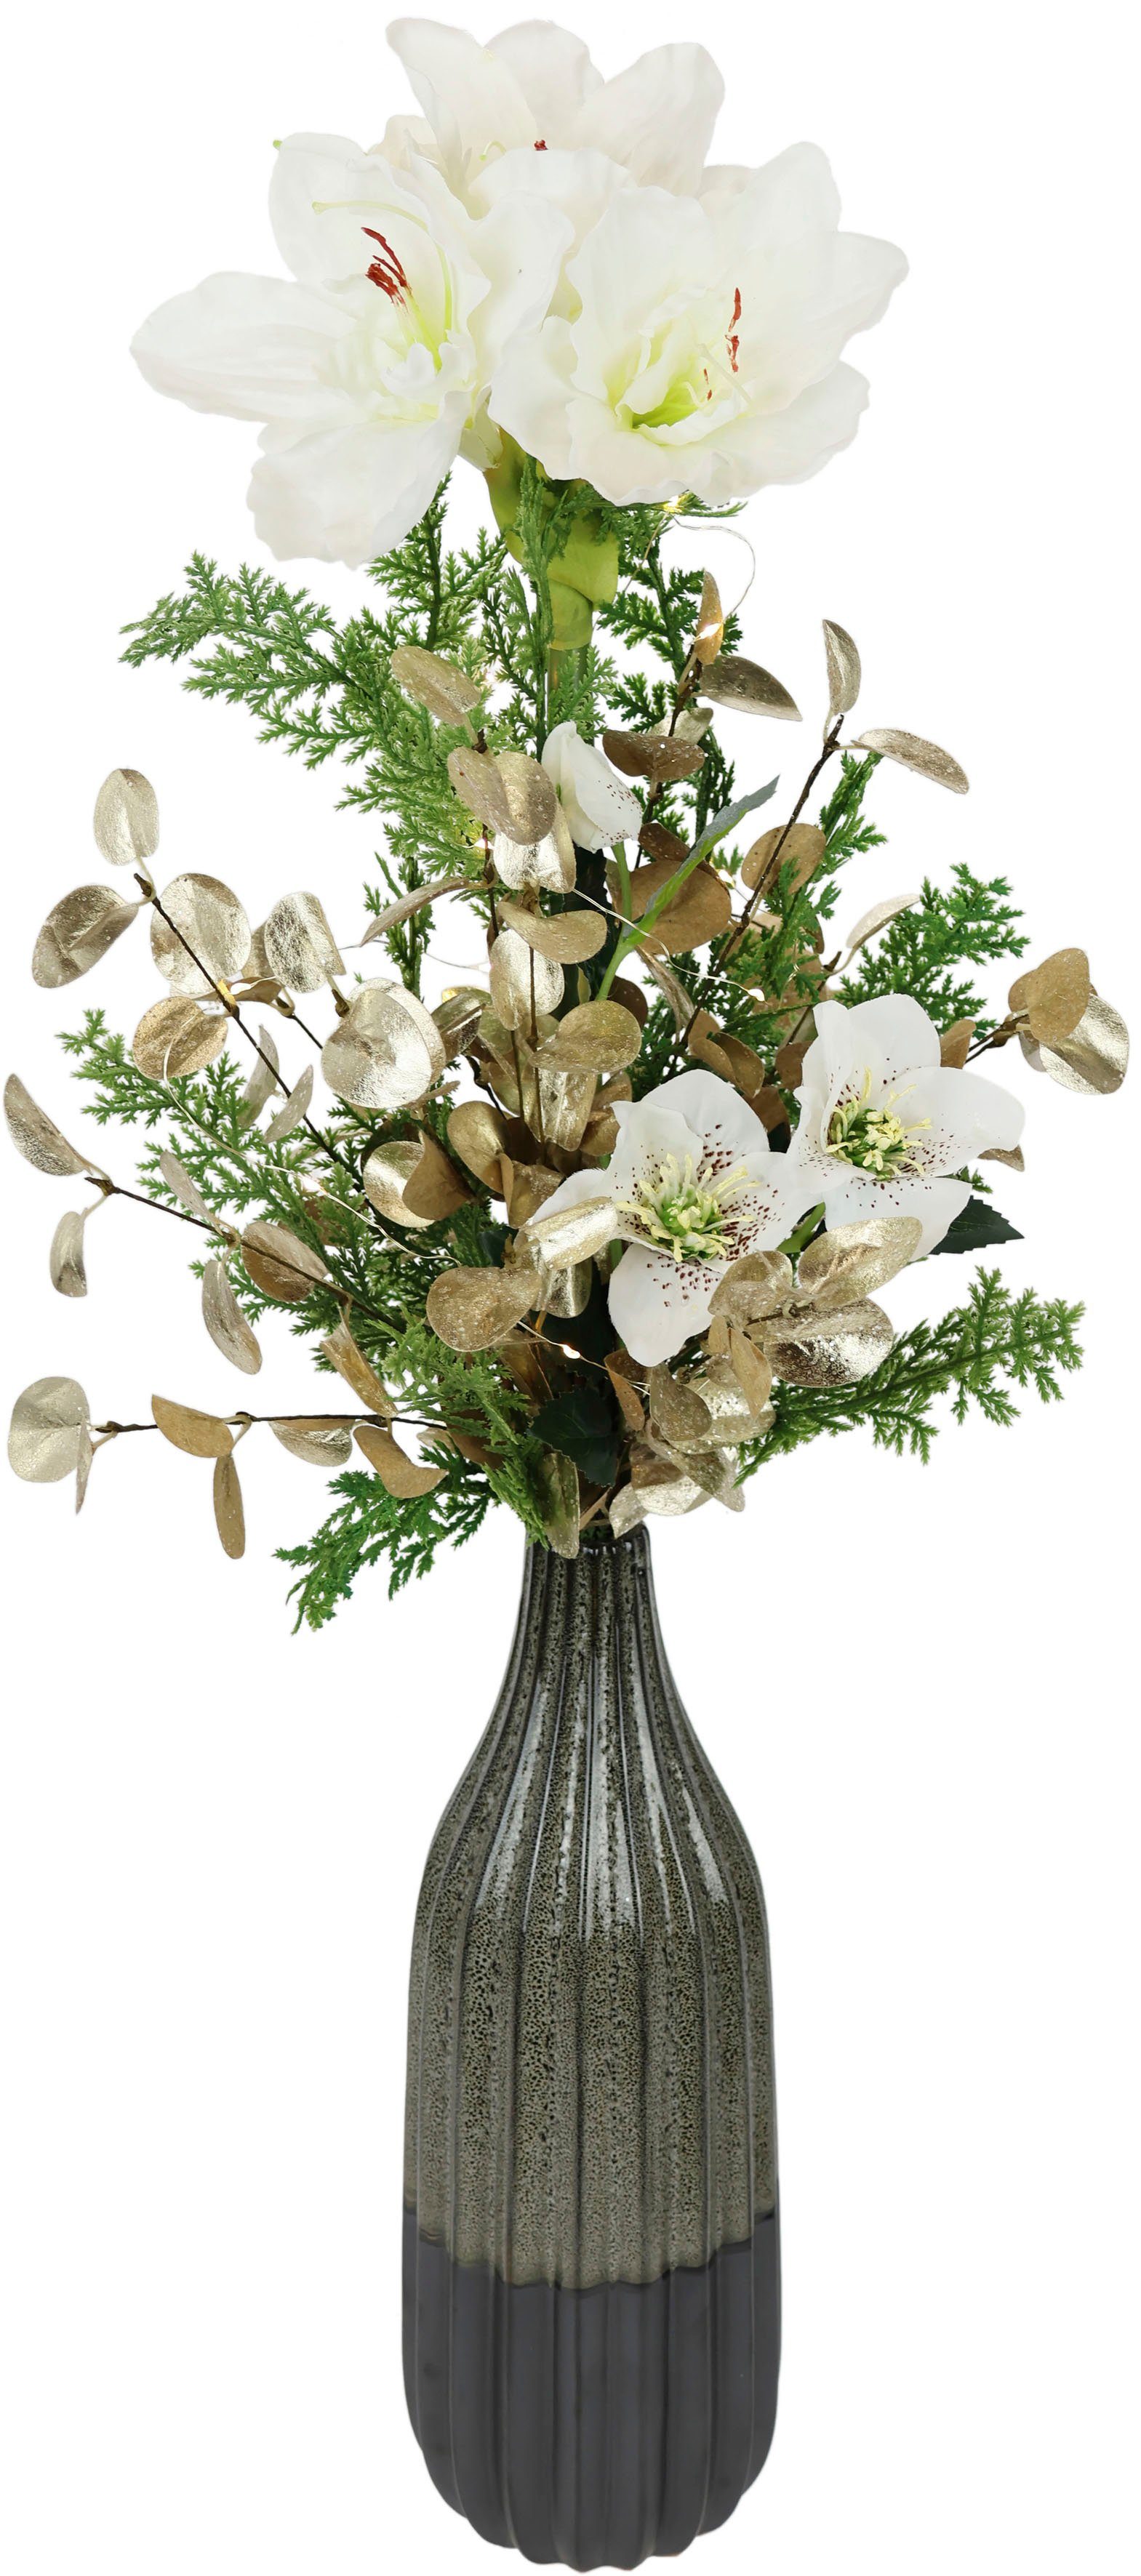 Winterliche Kunstpflanze mit Amaryllis in Vase aus Keramik,  Blumen-Arrangement, LED-Beleuchtung Amaryllis, Tanne, I.GE.A., Höhe 80 cm,  Weihnachtsdeko, Gesteck aus Blüten, Eukalyptus, Koniferen und Zweigen